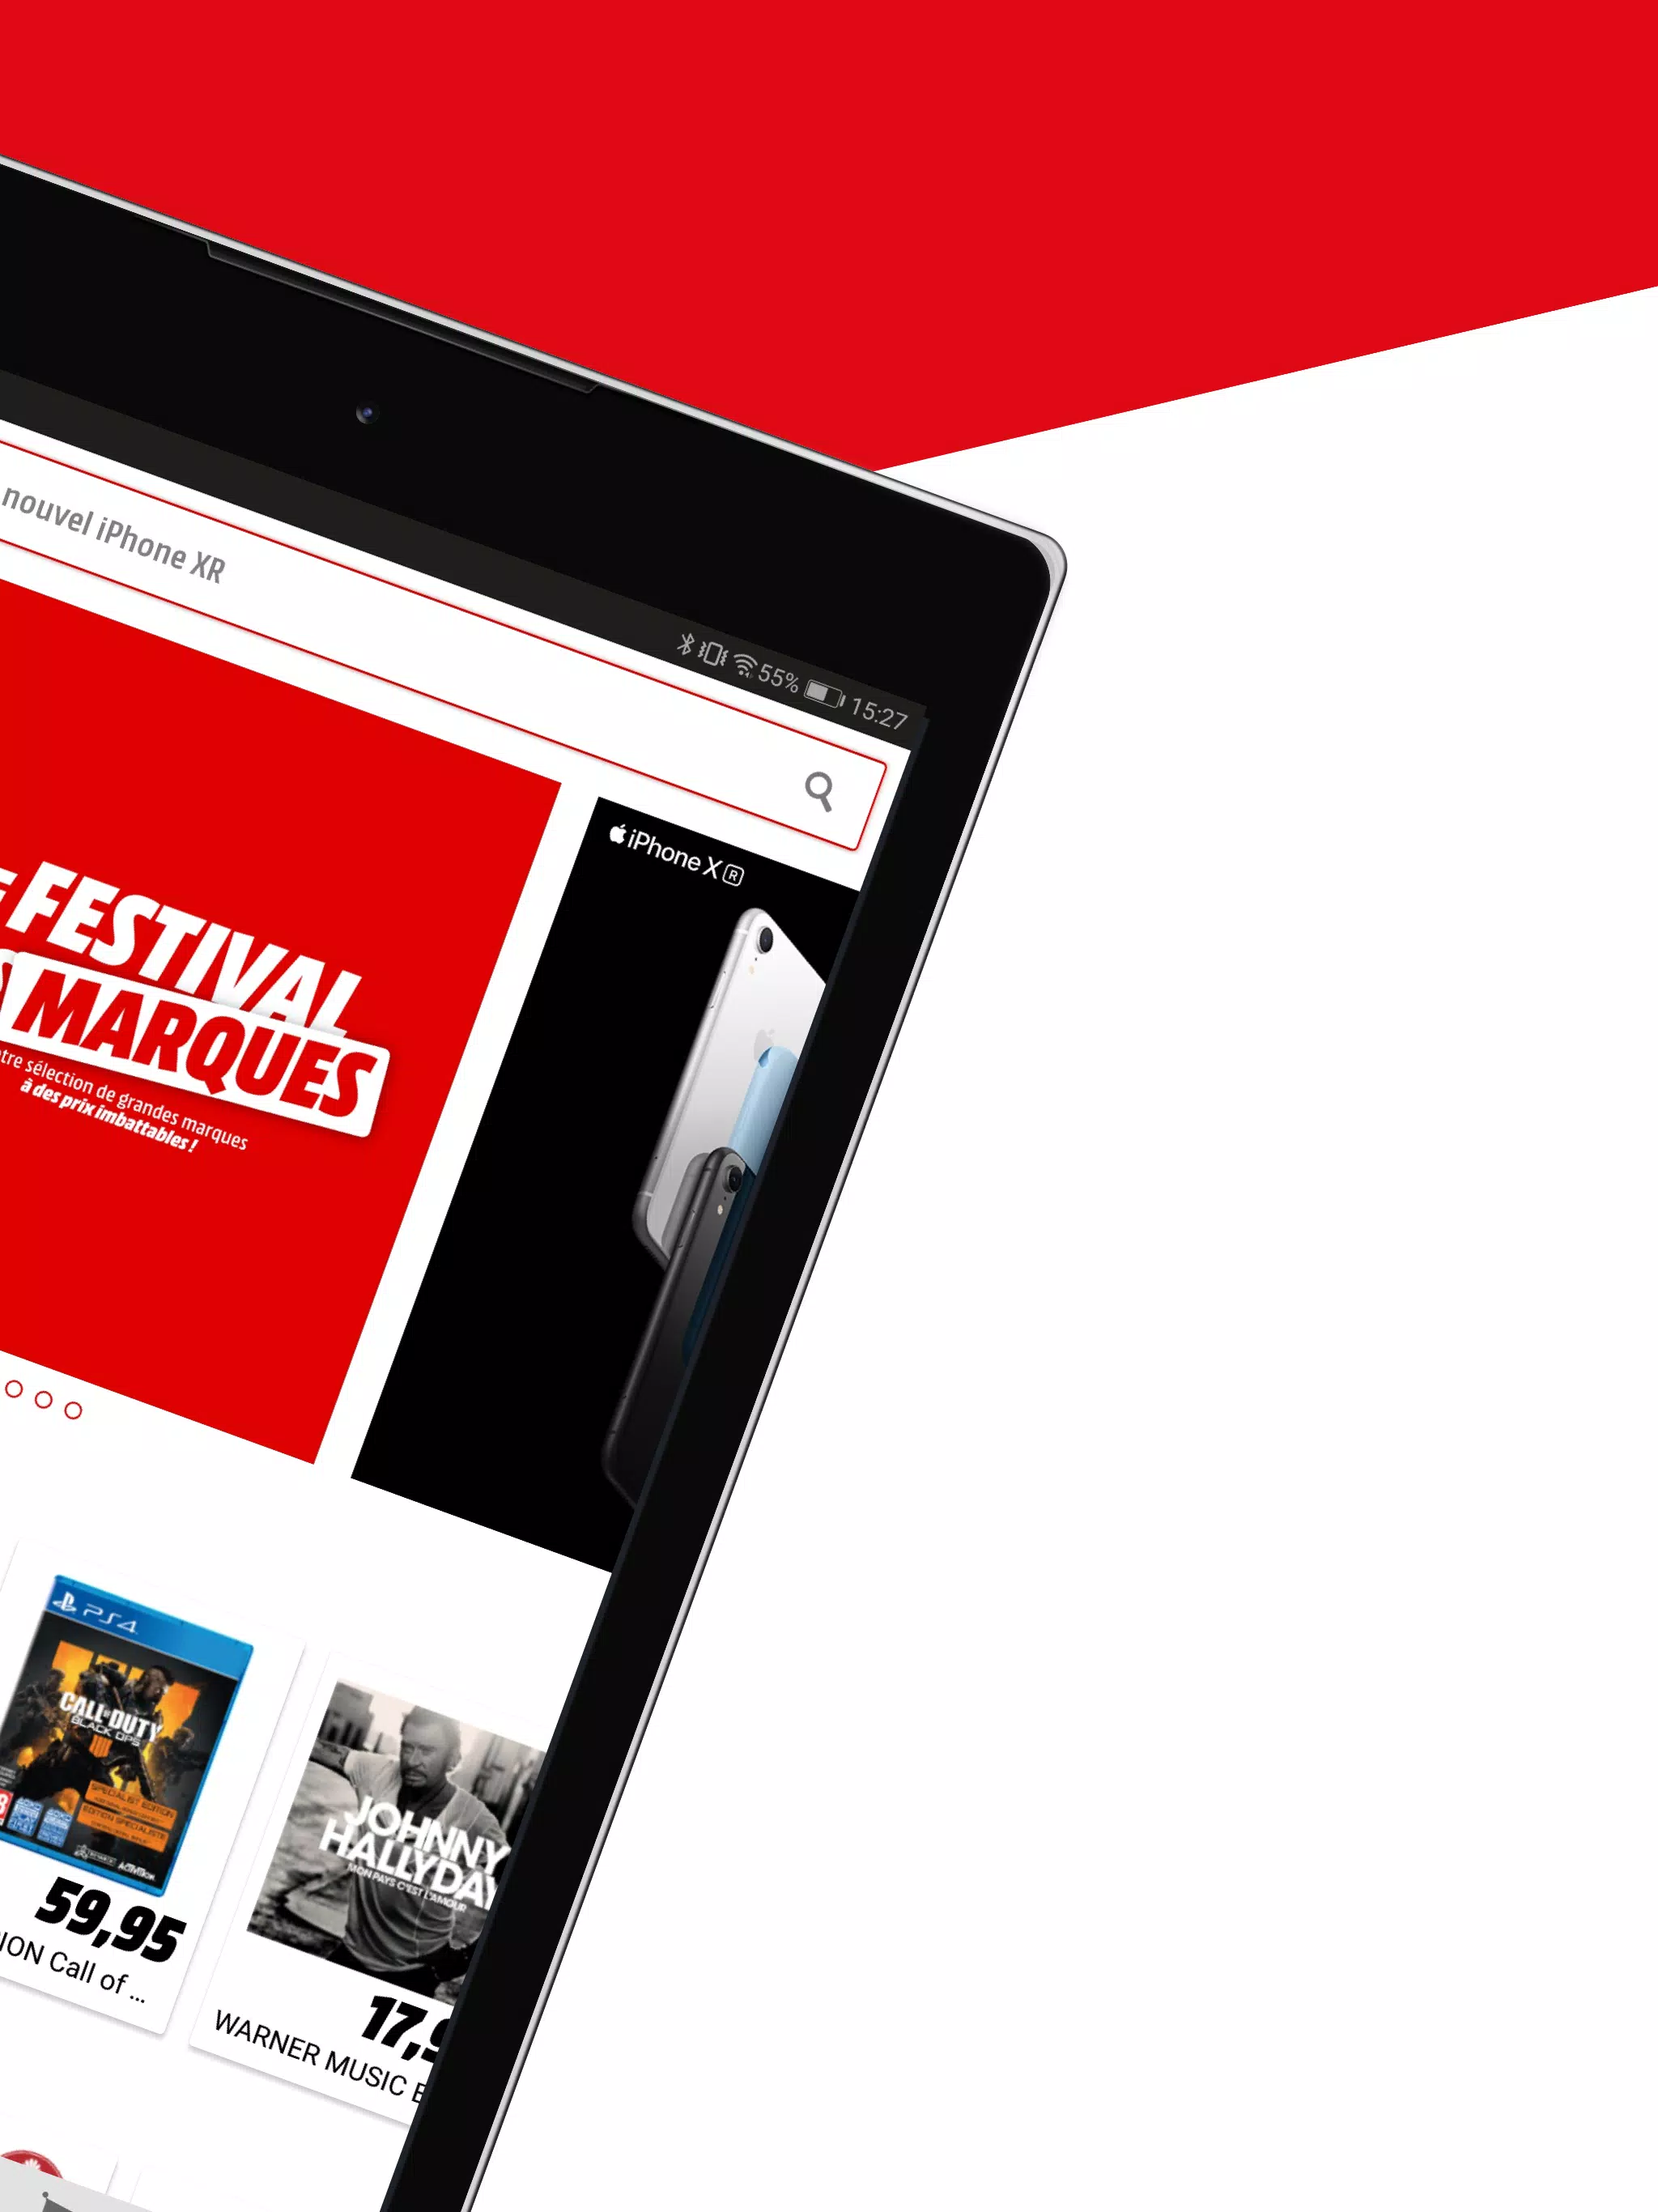 Media Markt Belgique for Android - APK Download